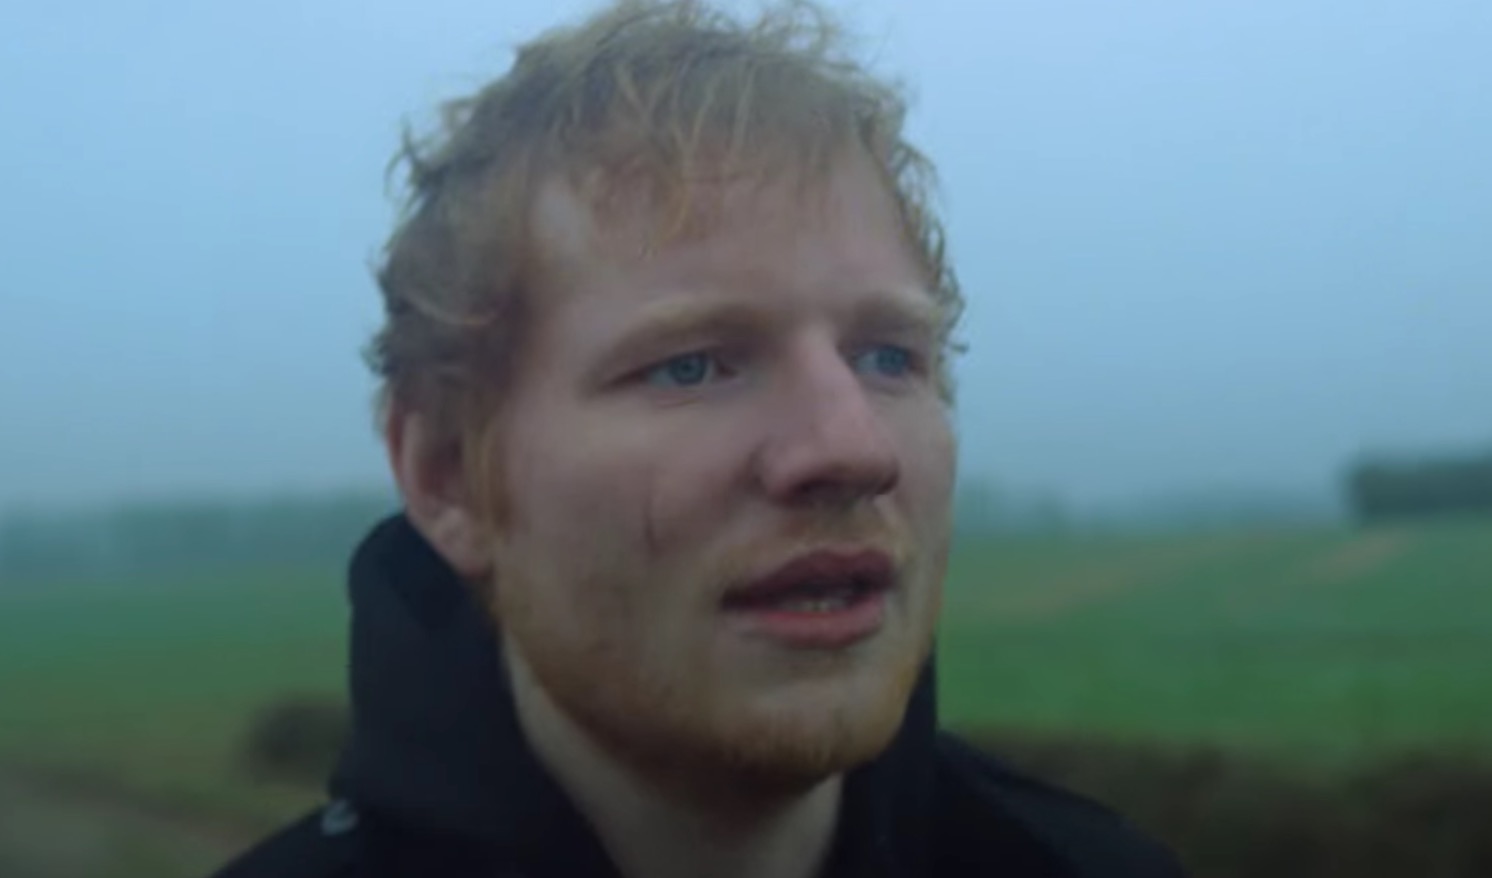  Ed Sheeran, rajado, regala un vídeo al single de menor éxito de su nuevo era